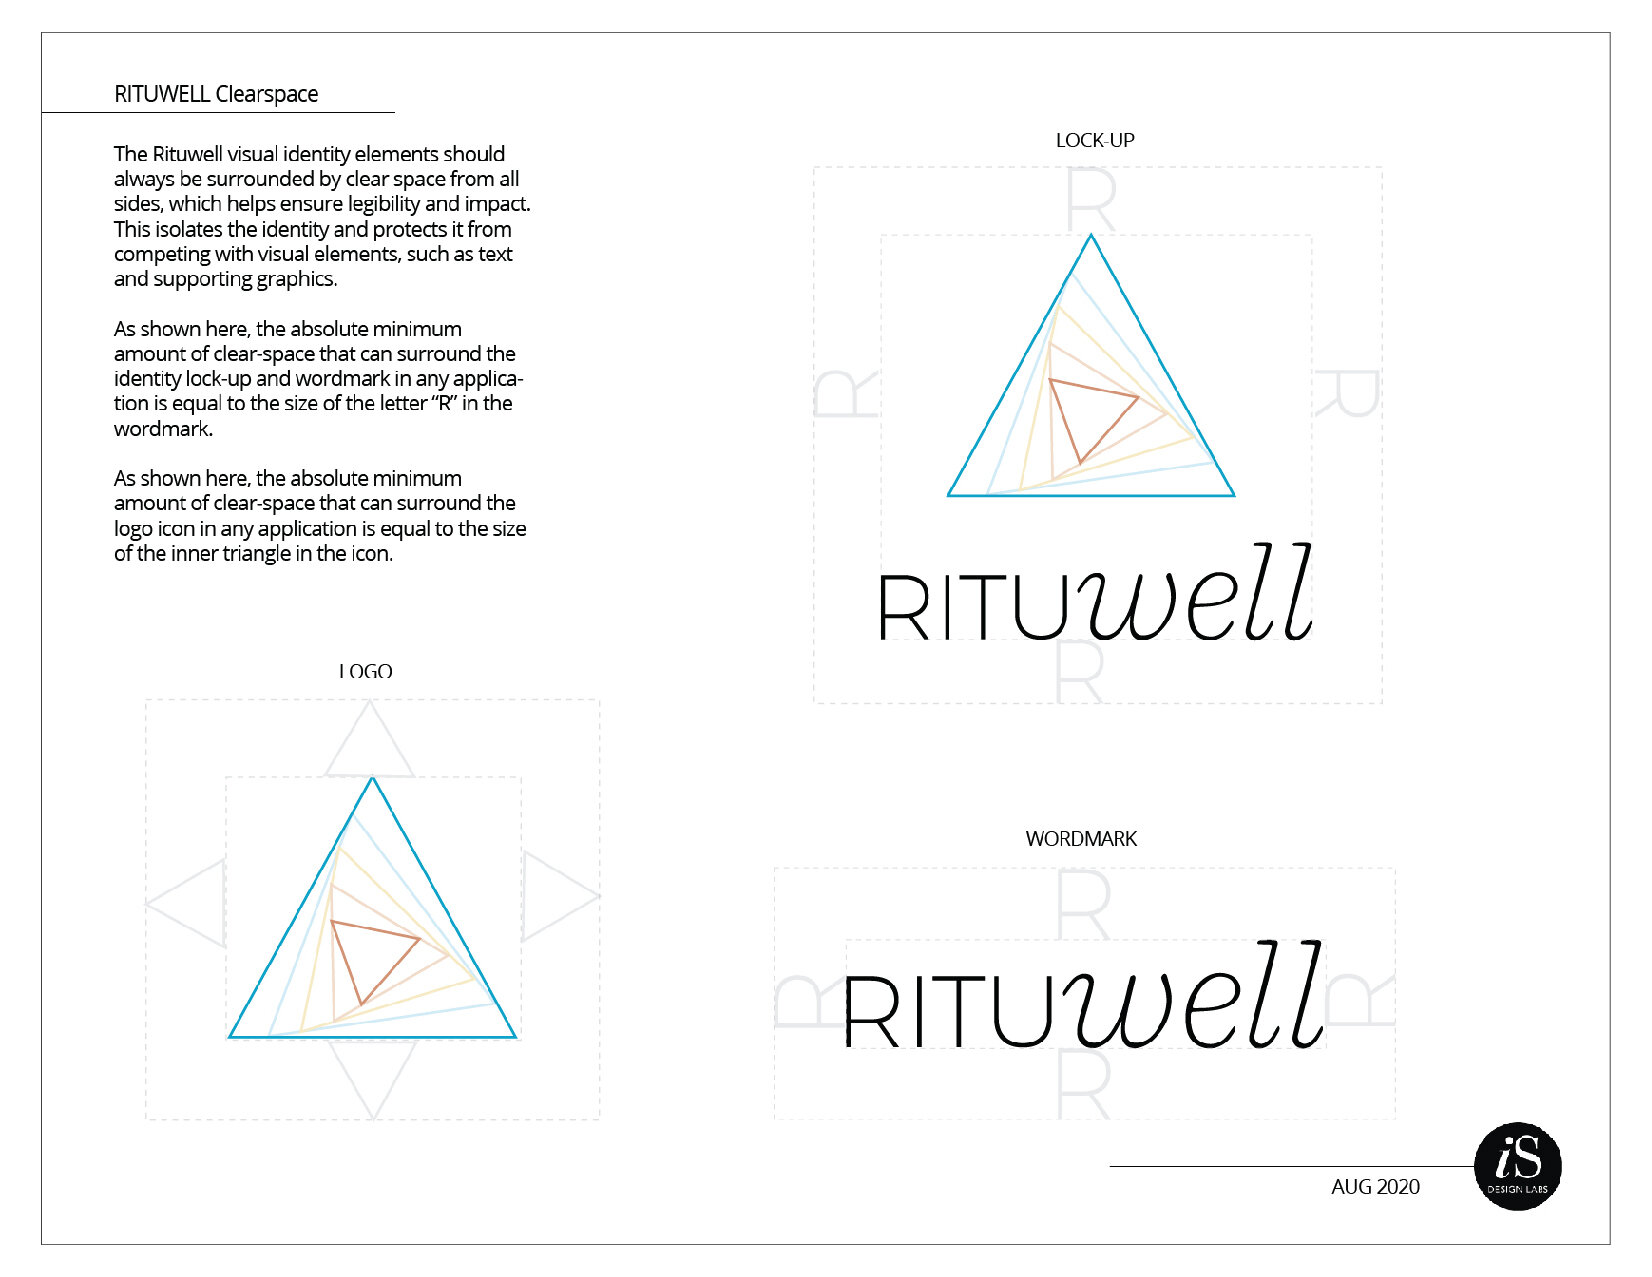 Rituwell BrandStandards wframe-11.jpg